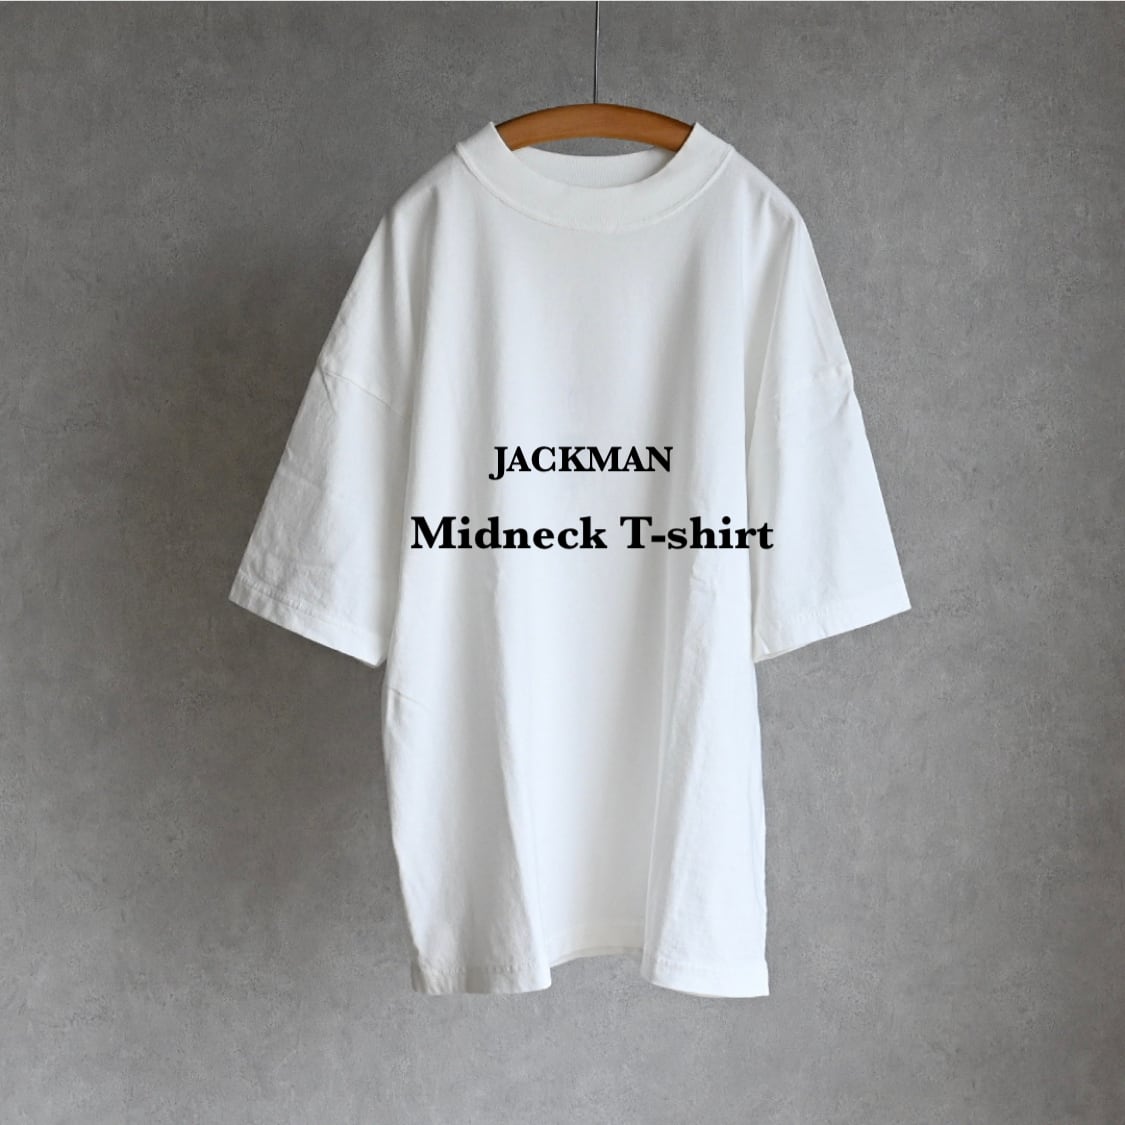 JACKMAN】MIDNECK T-SHIRT ジャックマン ミッドネック Tシャツ